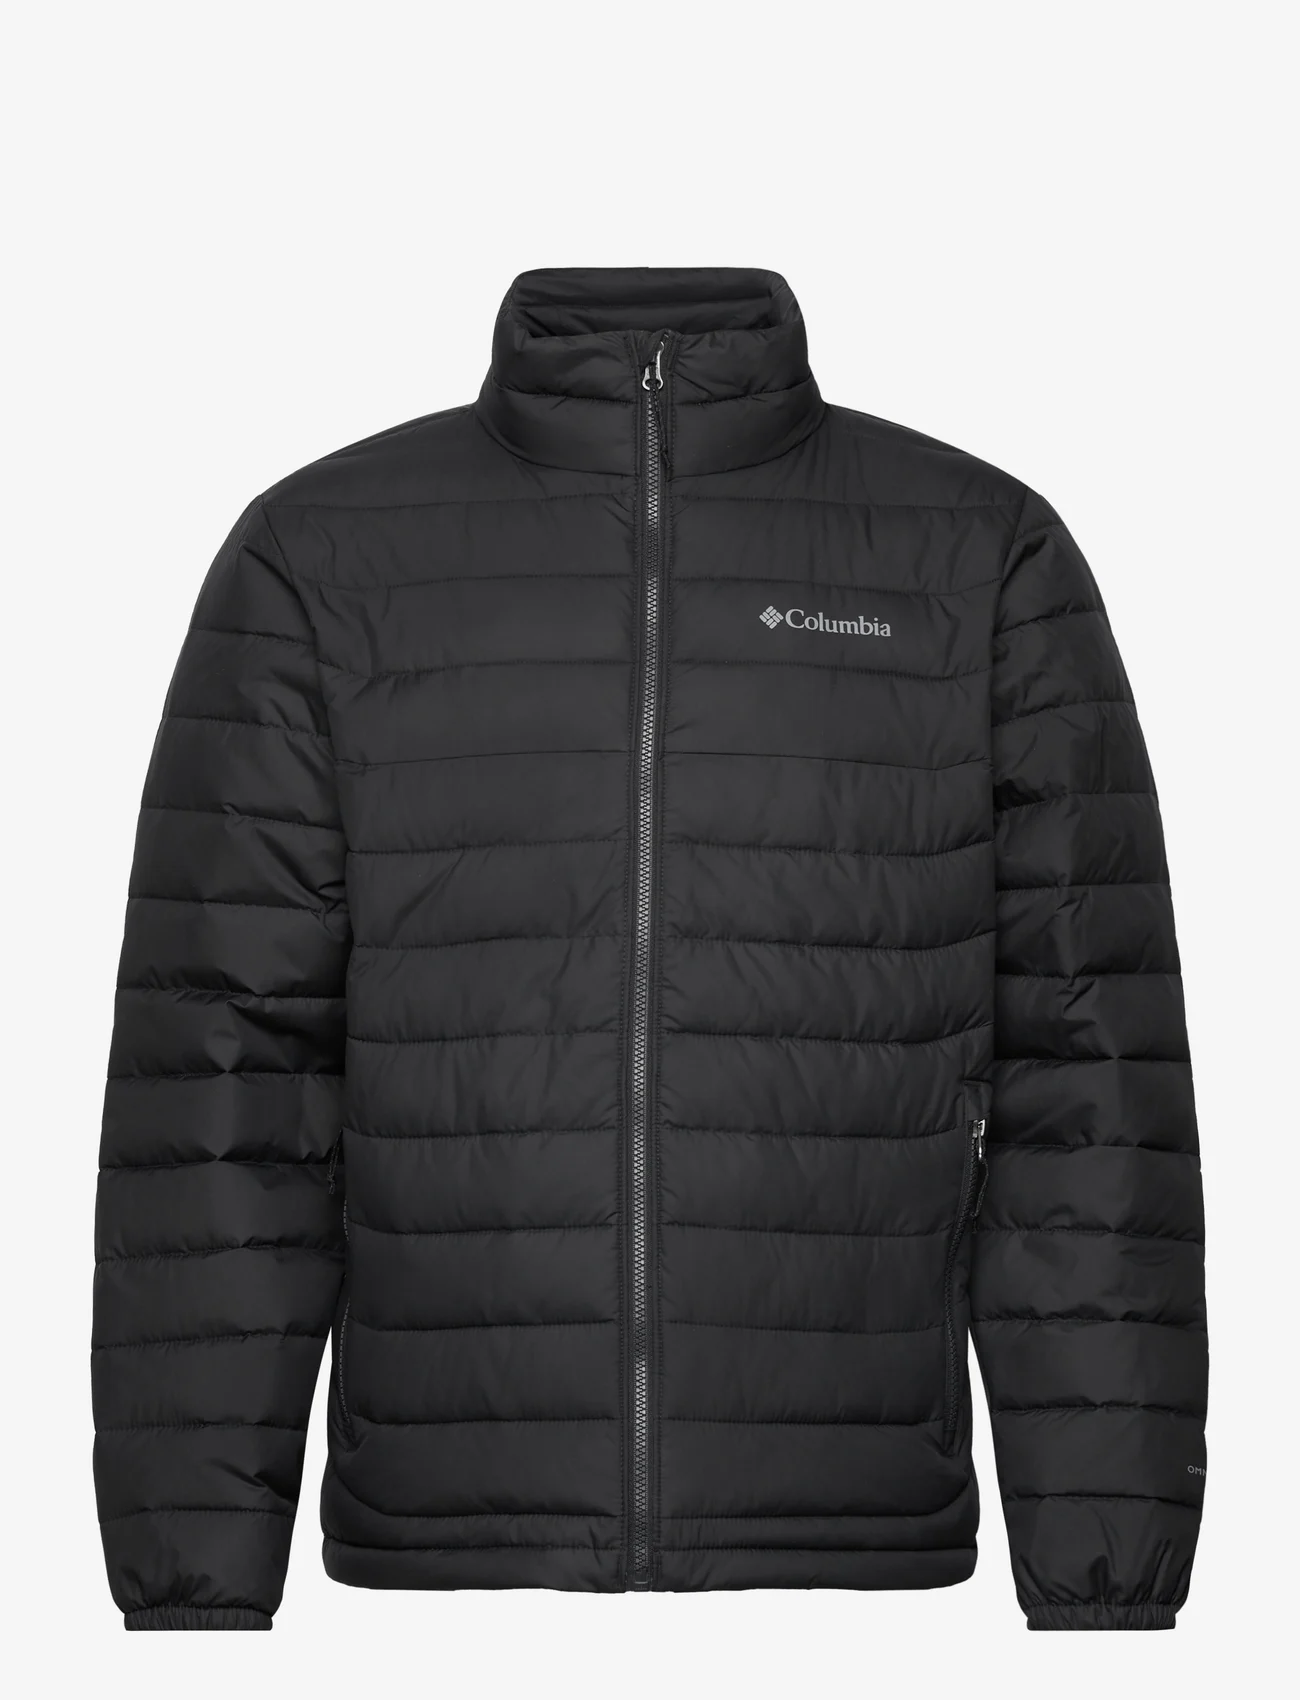 Columbia Sportswear - Powder Lite Jacket - vinterjakker - black - 0